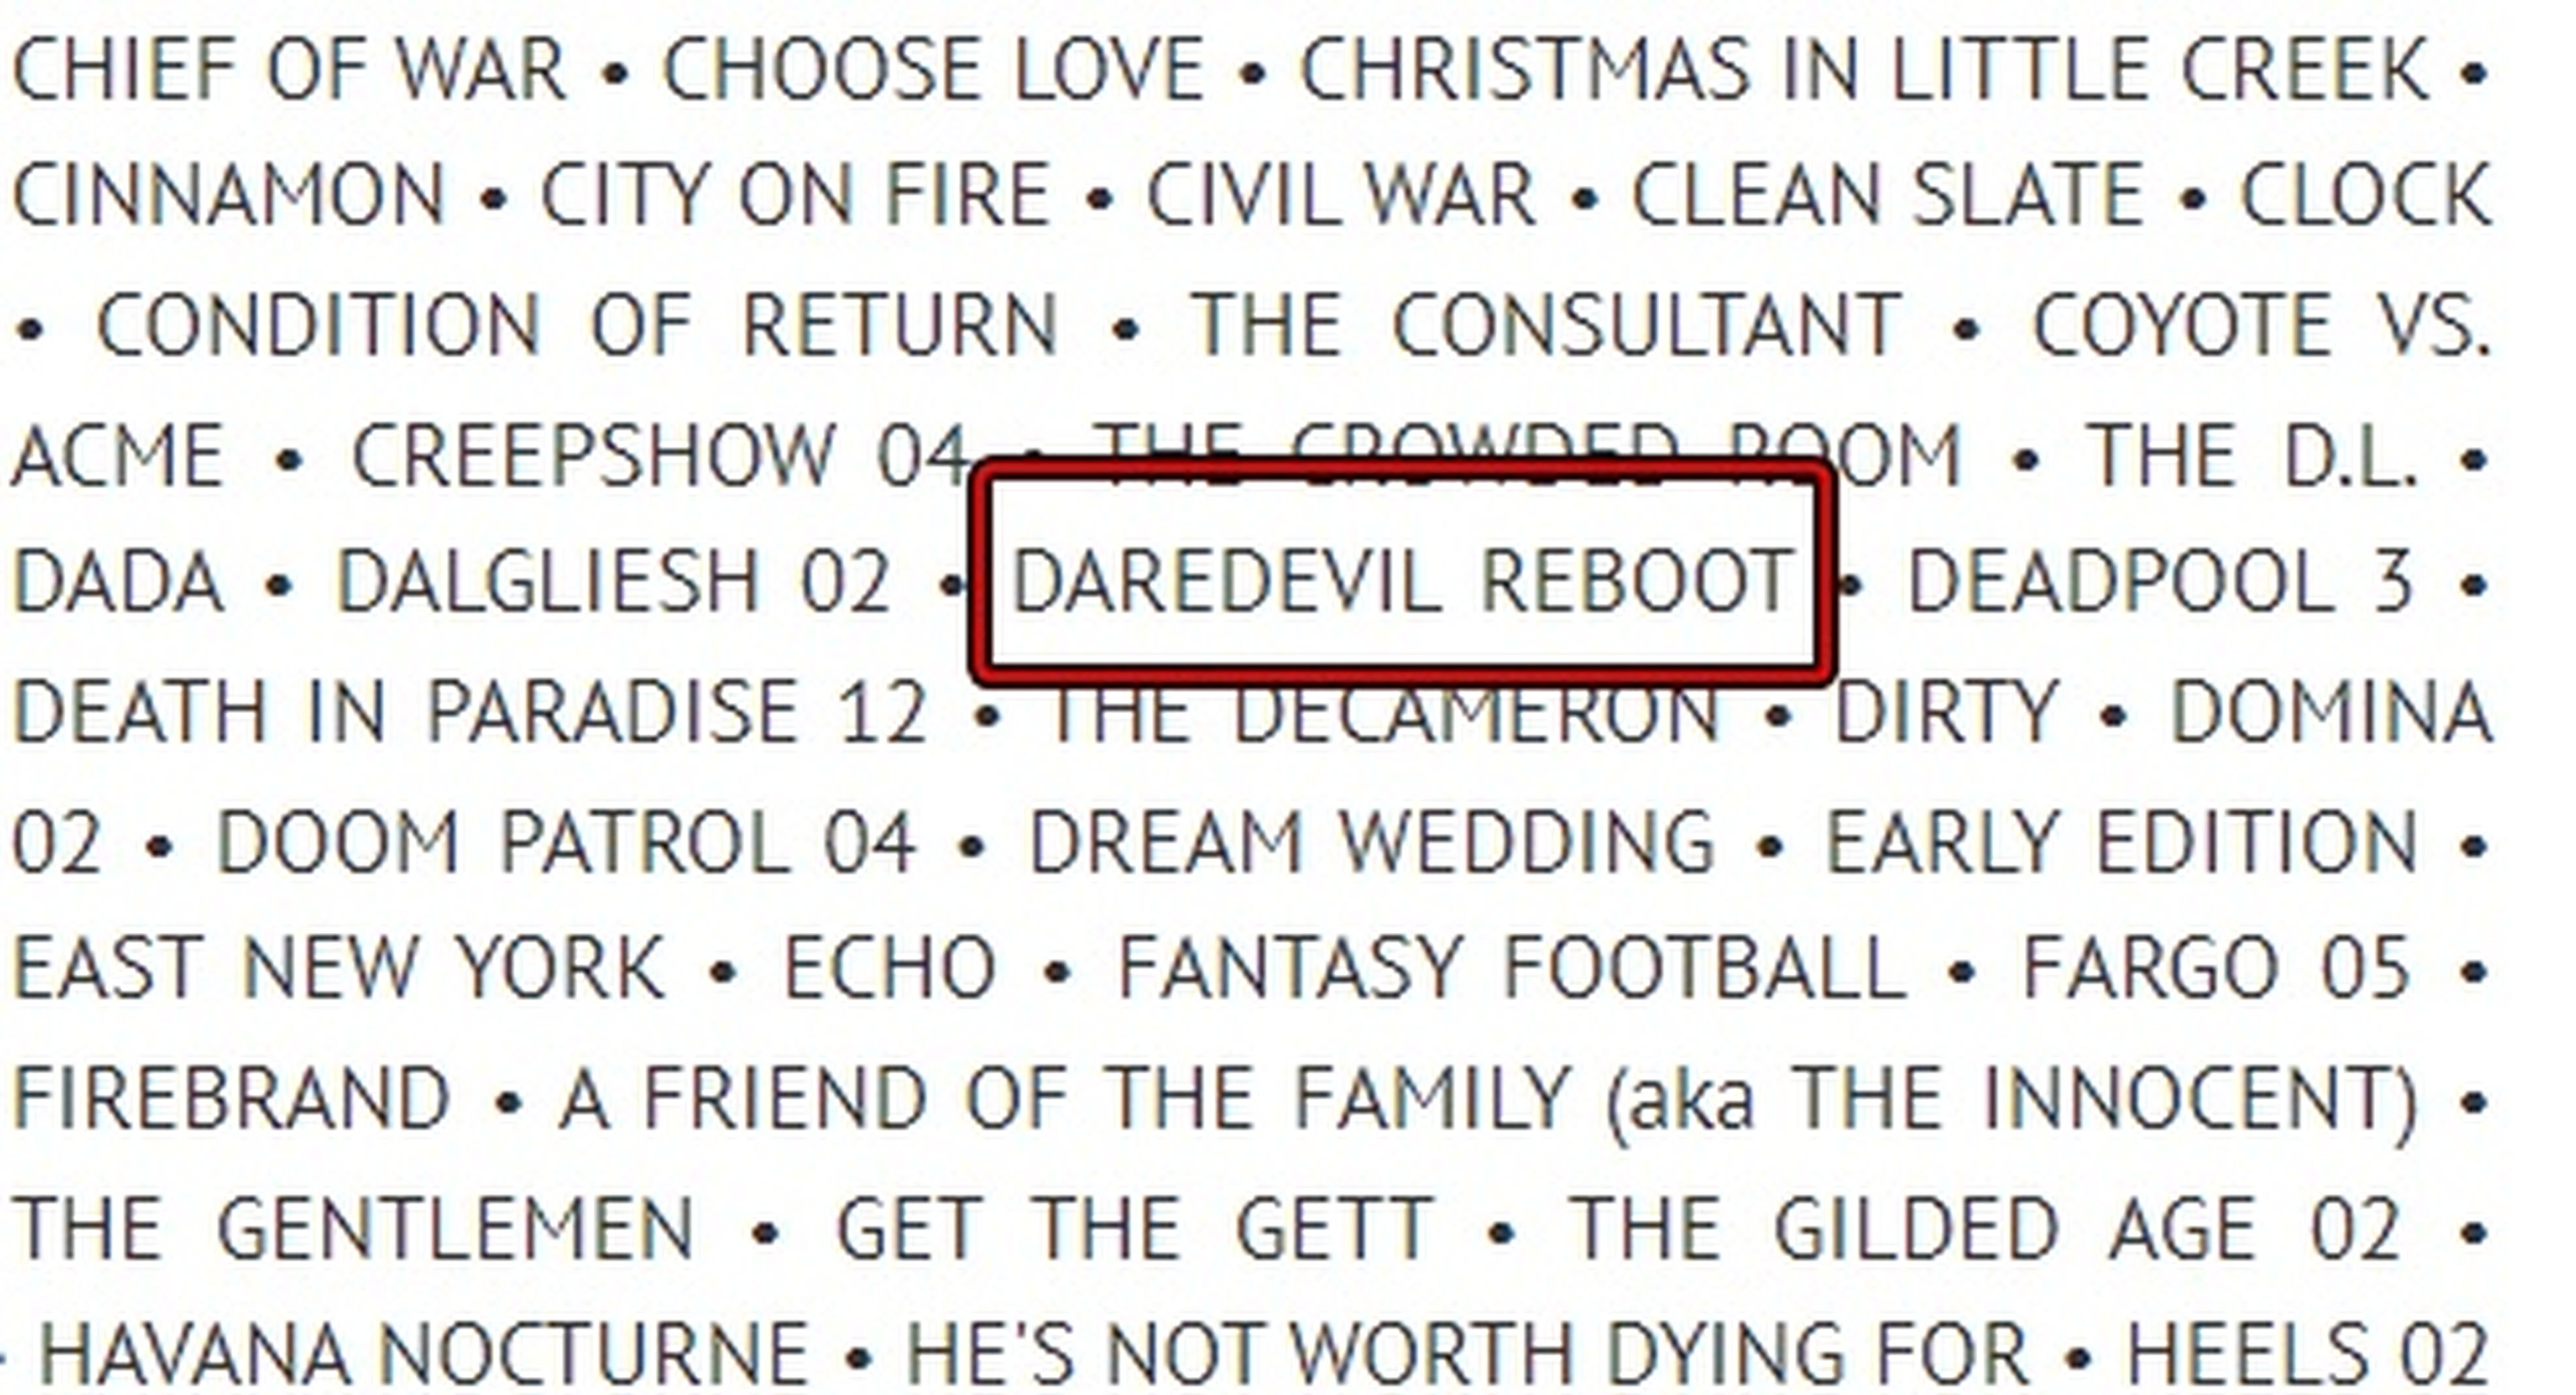 Confirmado el reboot de Daredevil